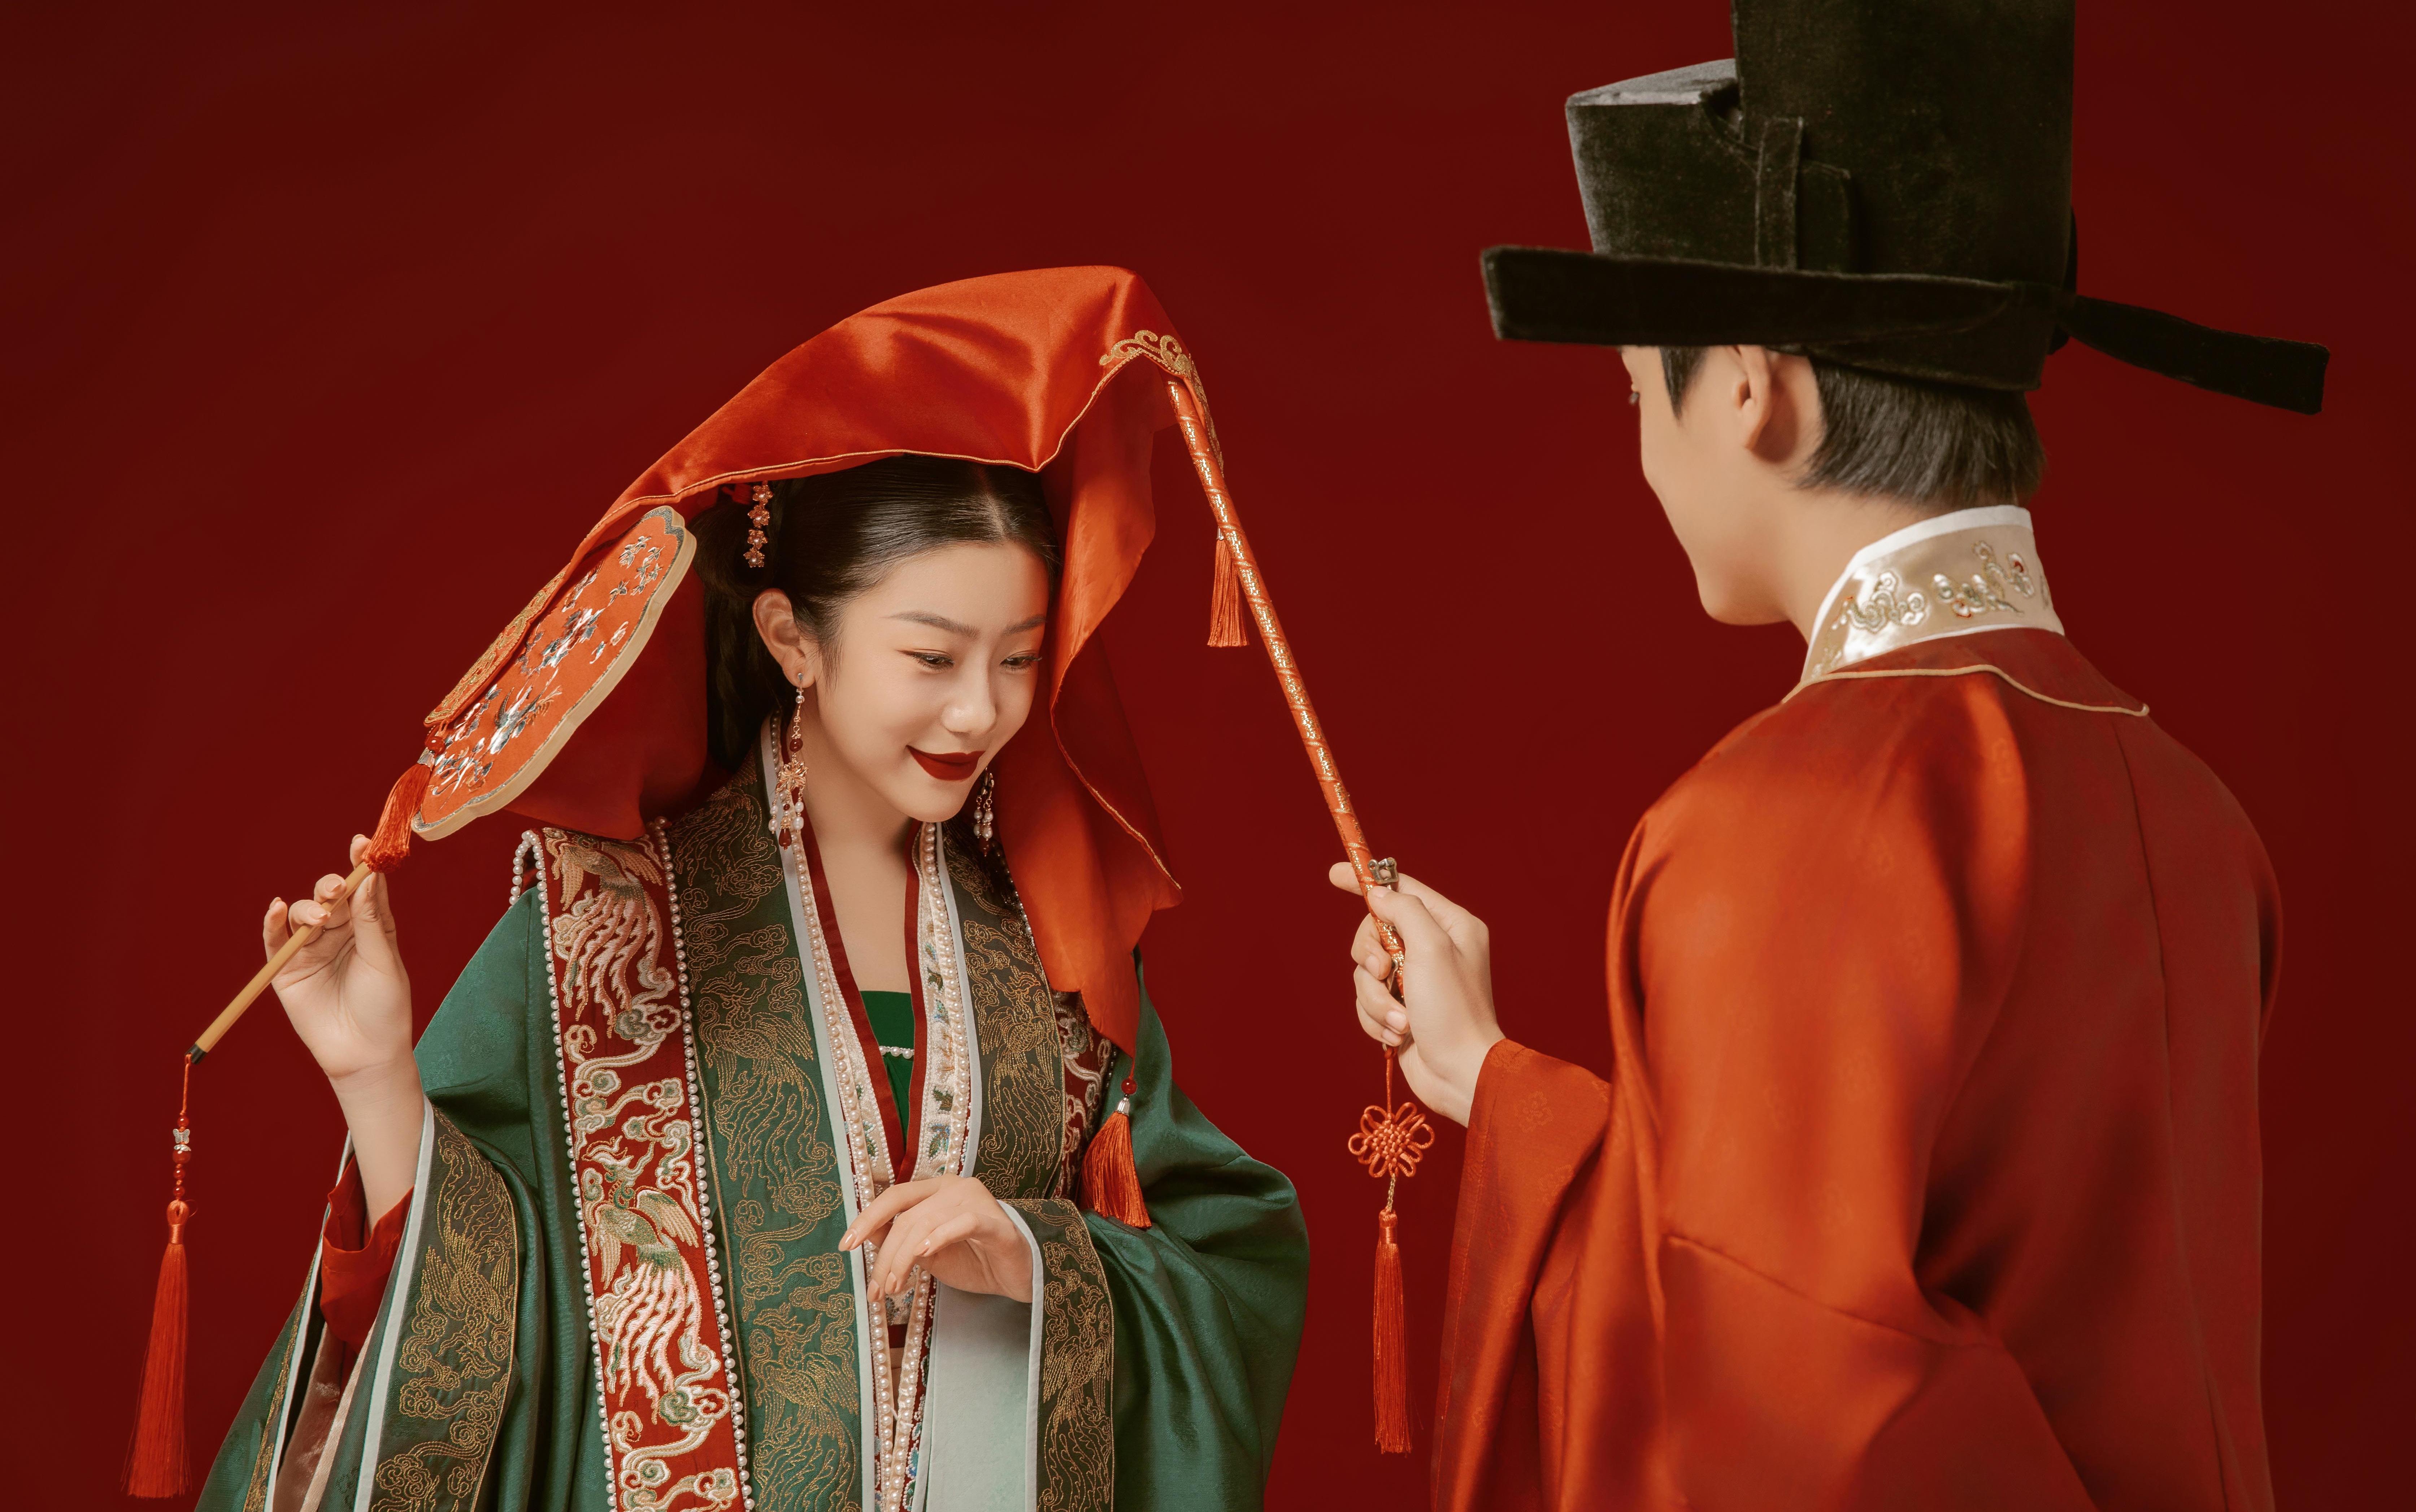 中国女孩必拍的汉服婚纱照❤️一统全家审美